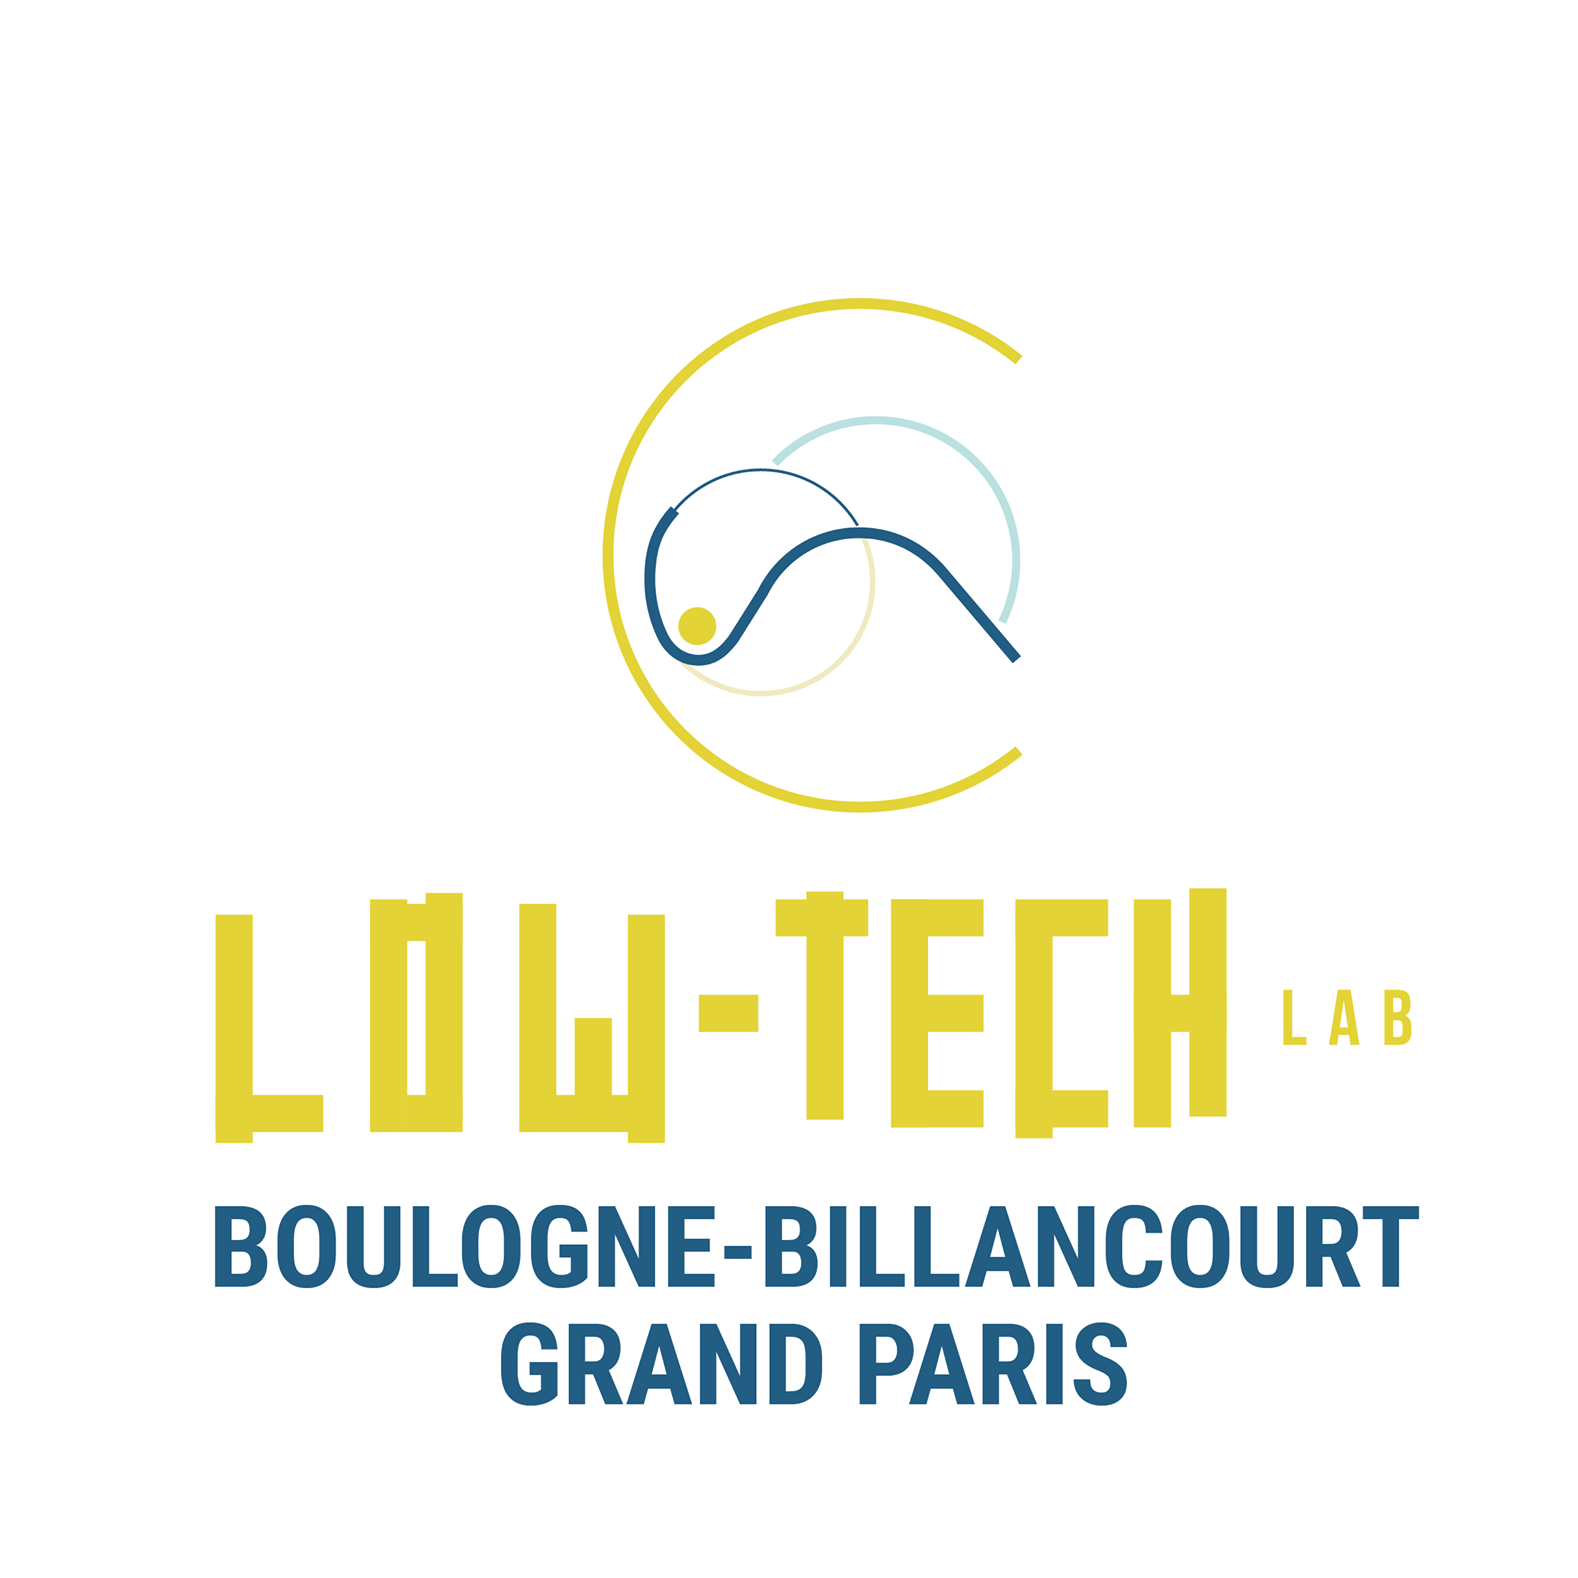 Group-Low-tech Lab Boulogne-Billancourt Grand Paris 124483660 189494656046940 4928000865577870244 o.png